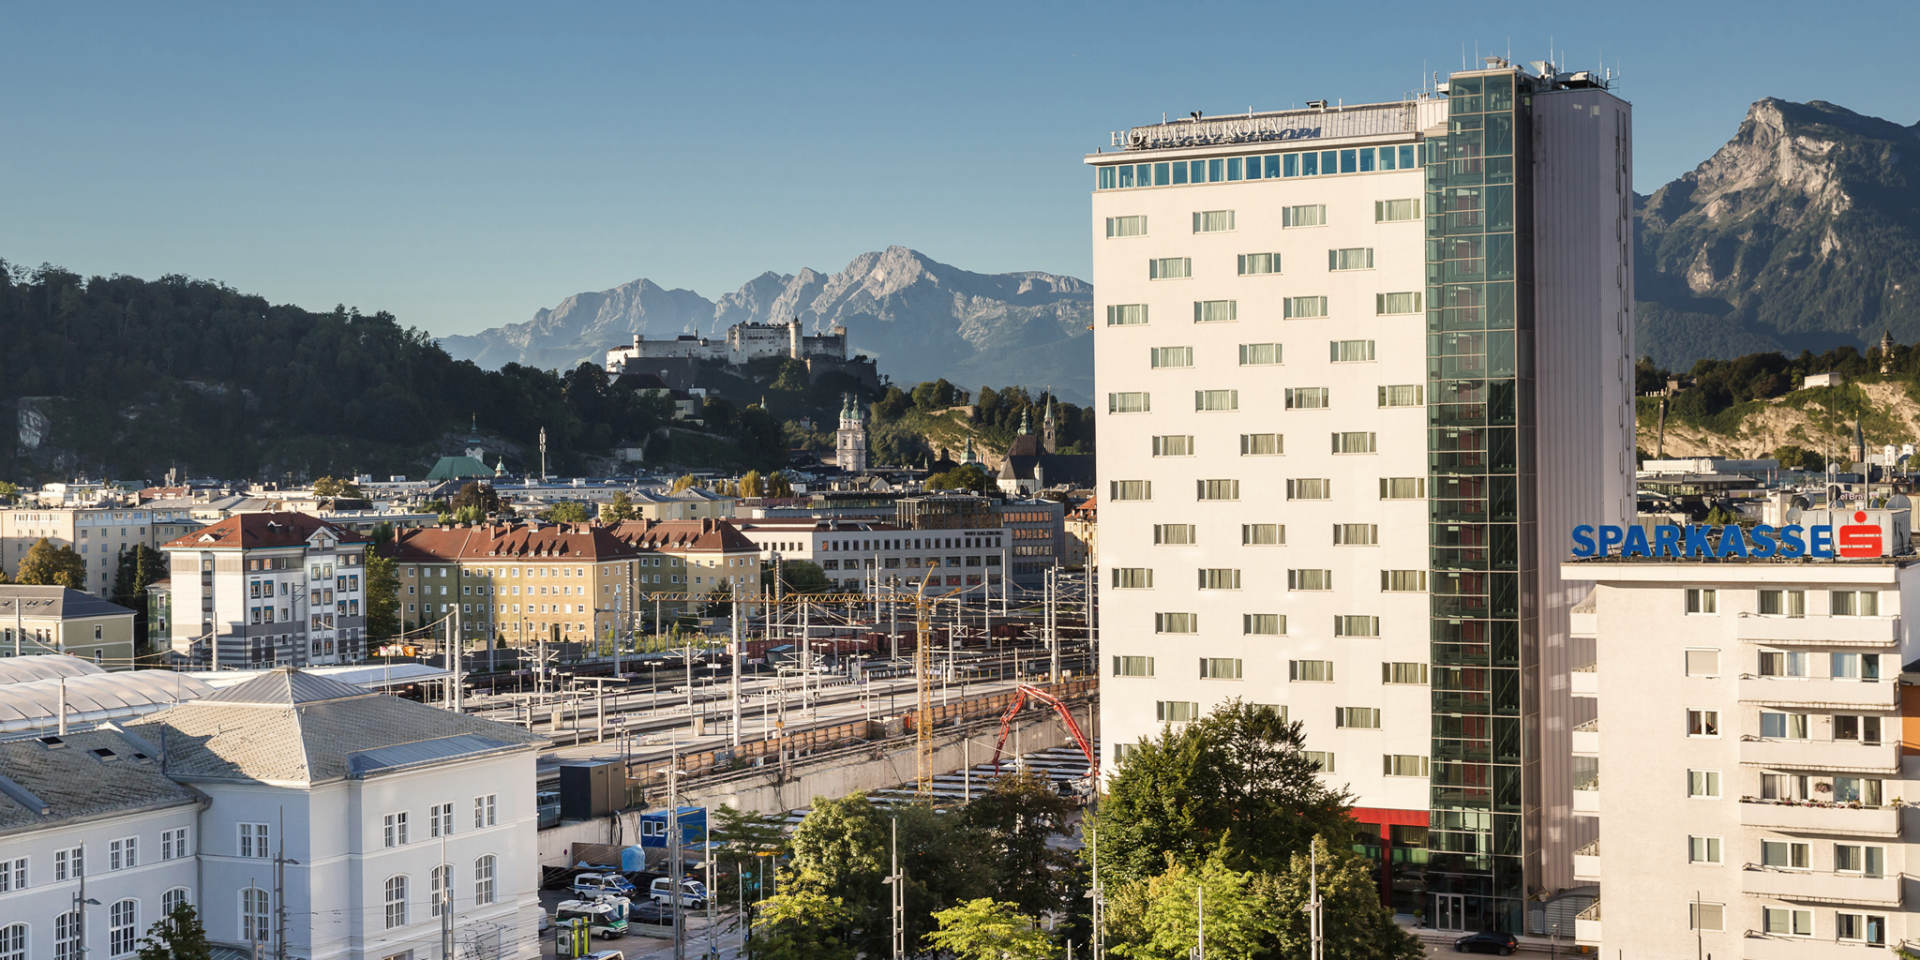 Austria Trend Hotel Europa Salzburg - exterior view © Austria Trend Hotels